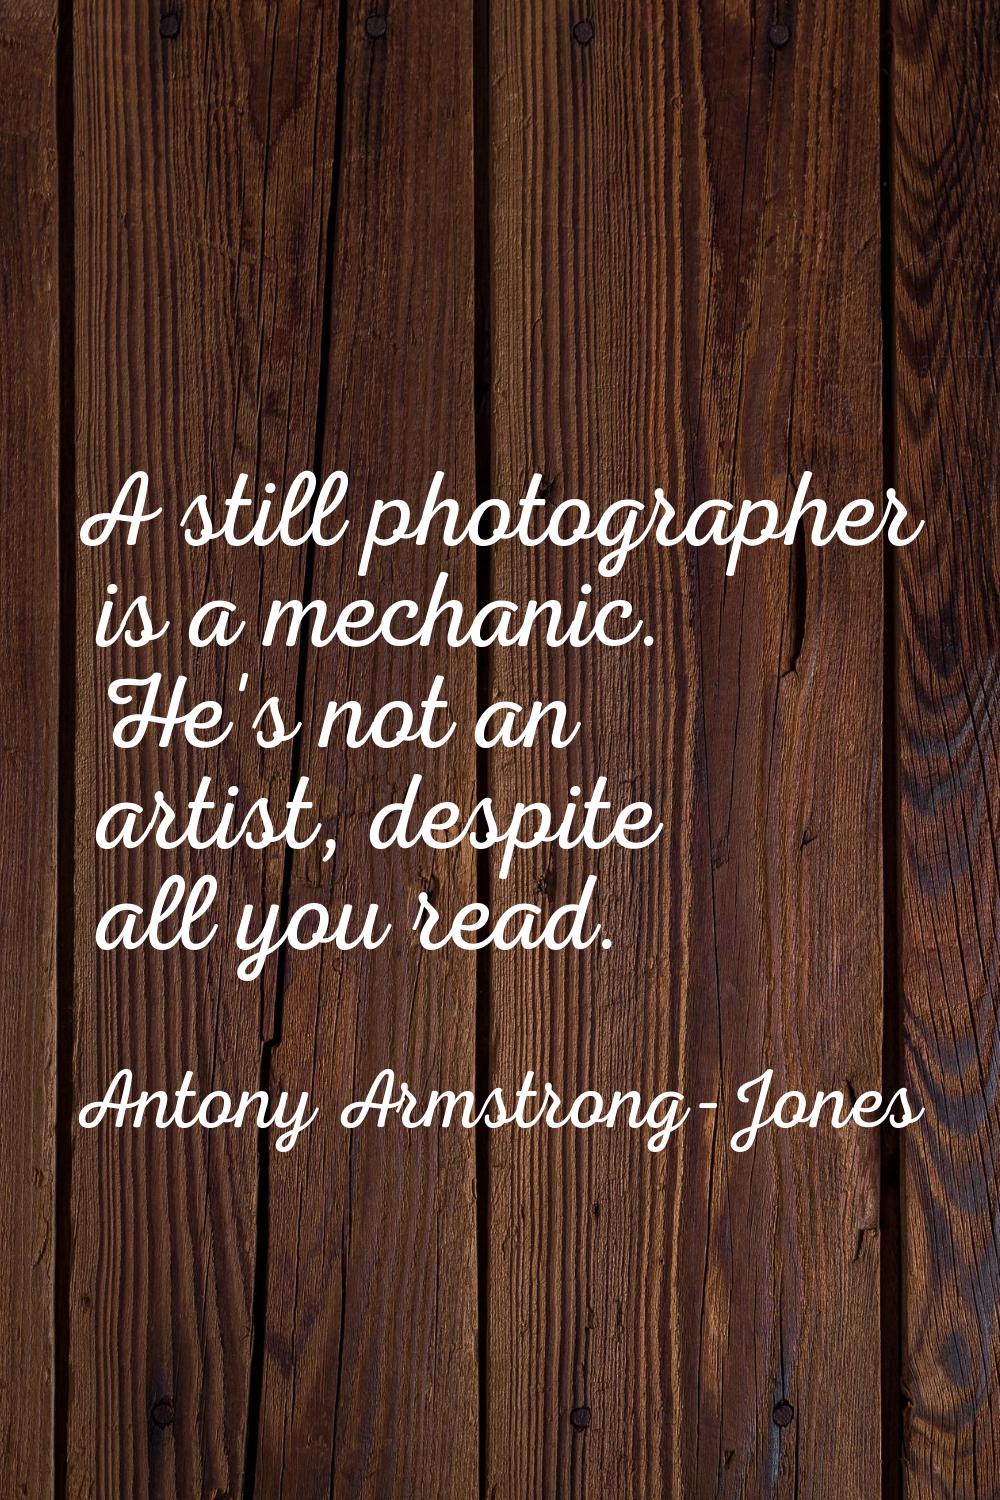 A still photographer is a mechanic. He's not an artist, despite all you read.